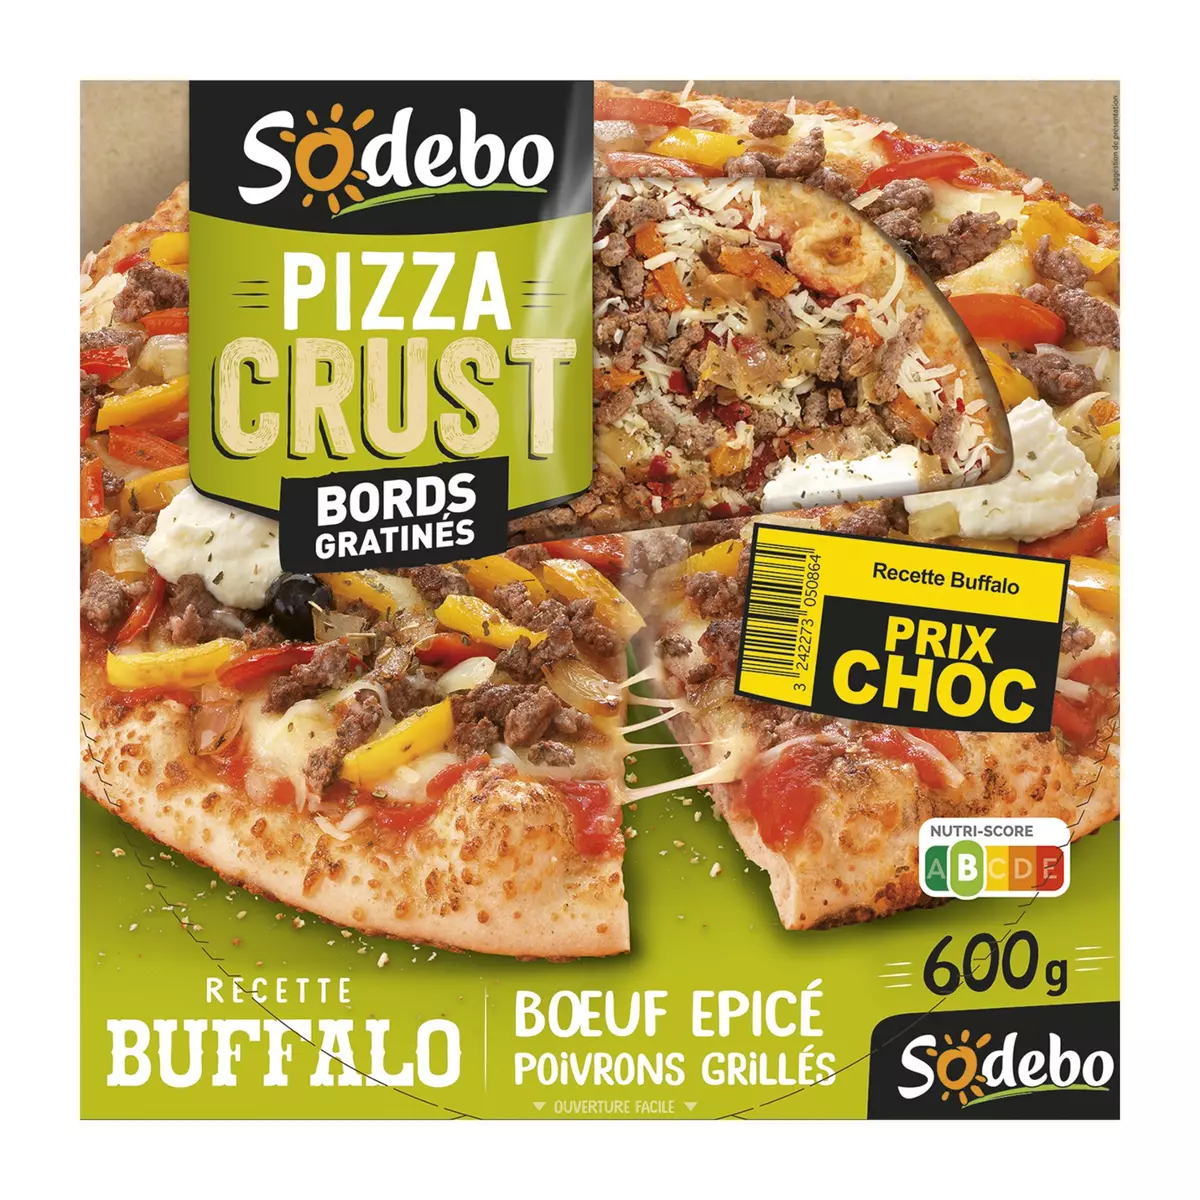 SODEBO Pizza Crust recette buffalo boeuf épicé poivrons grillés 600g